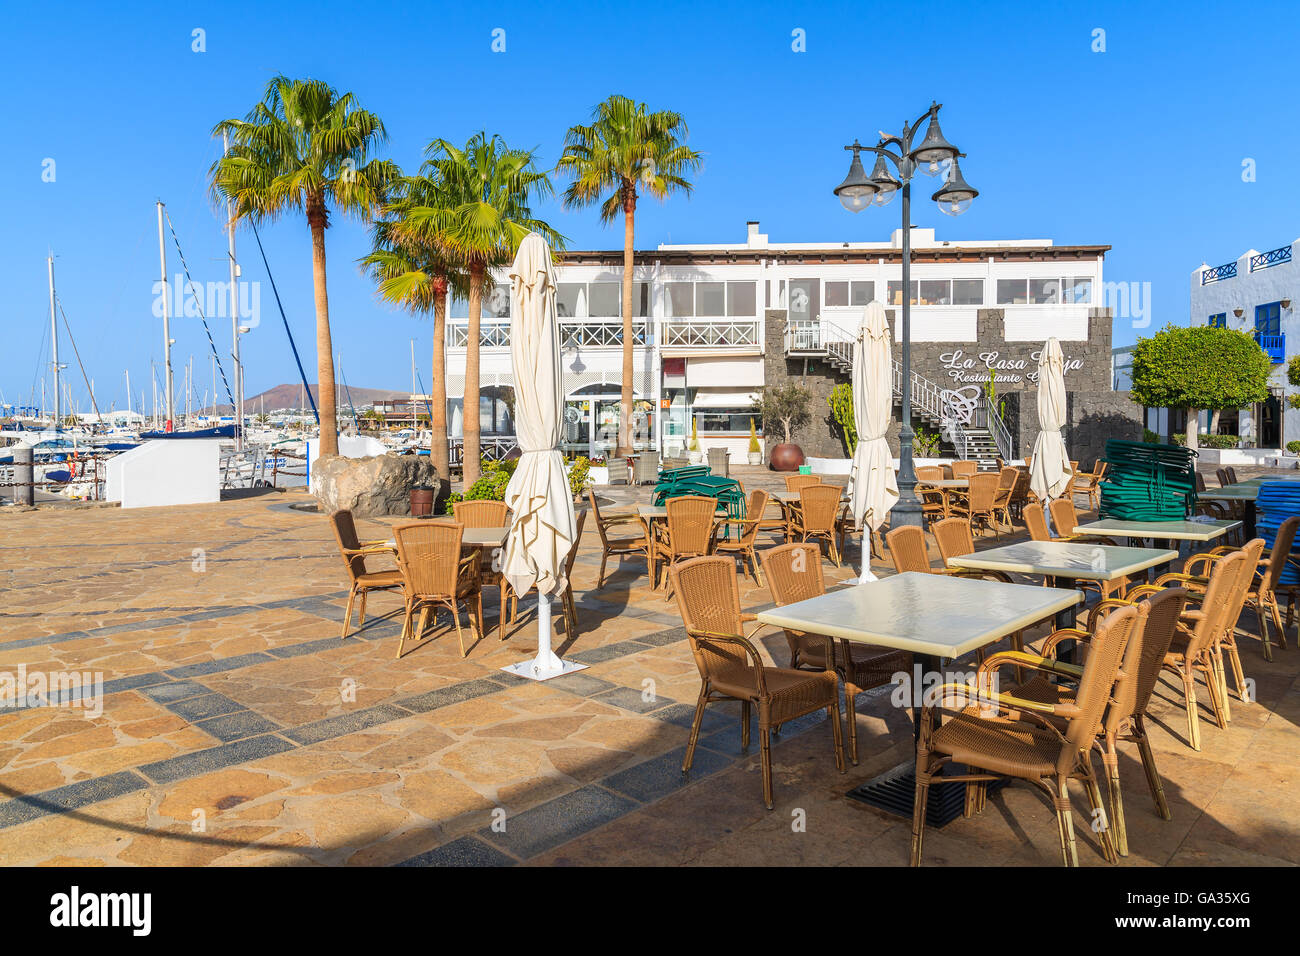 MARINA RUBICON, LANZAROTE - Jan 11, 2015: en las mesas del restaurante Rubicon Puerto, Playa Blanca ciudad. Las Islas Canarias son un popular destino de vacaciones debido al soleado clima tropical. Foto de stock